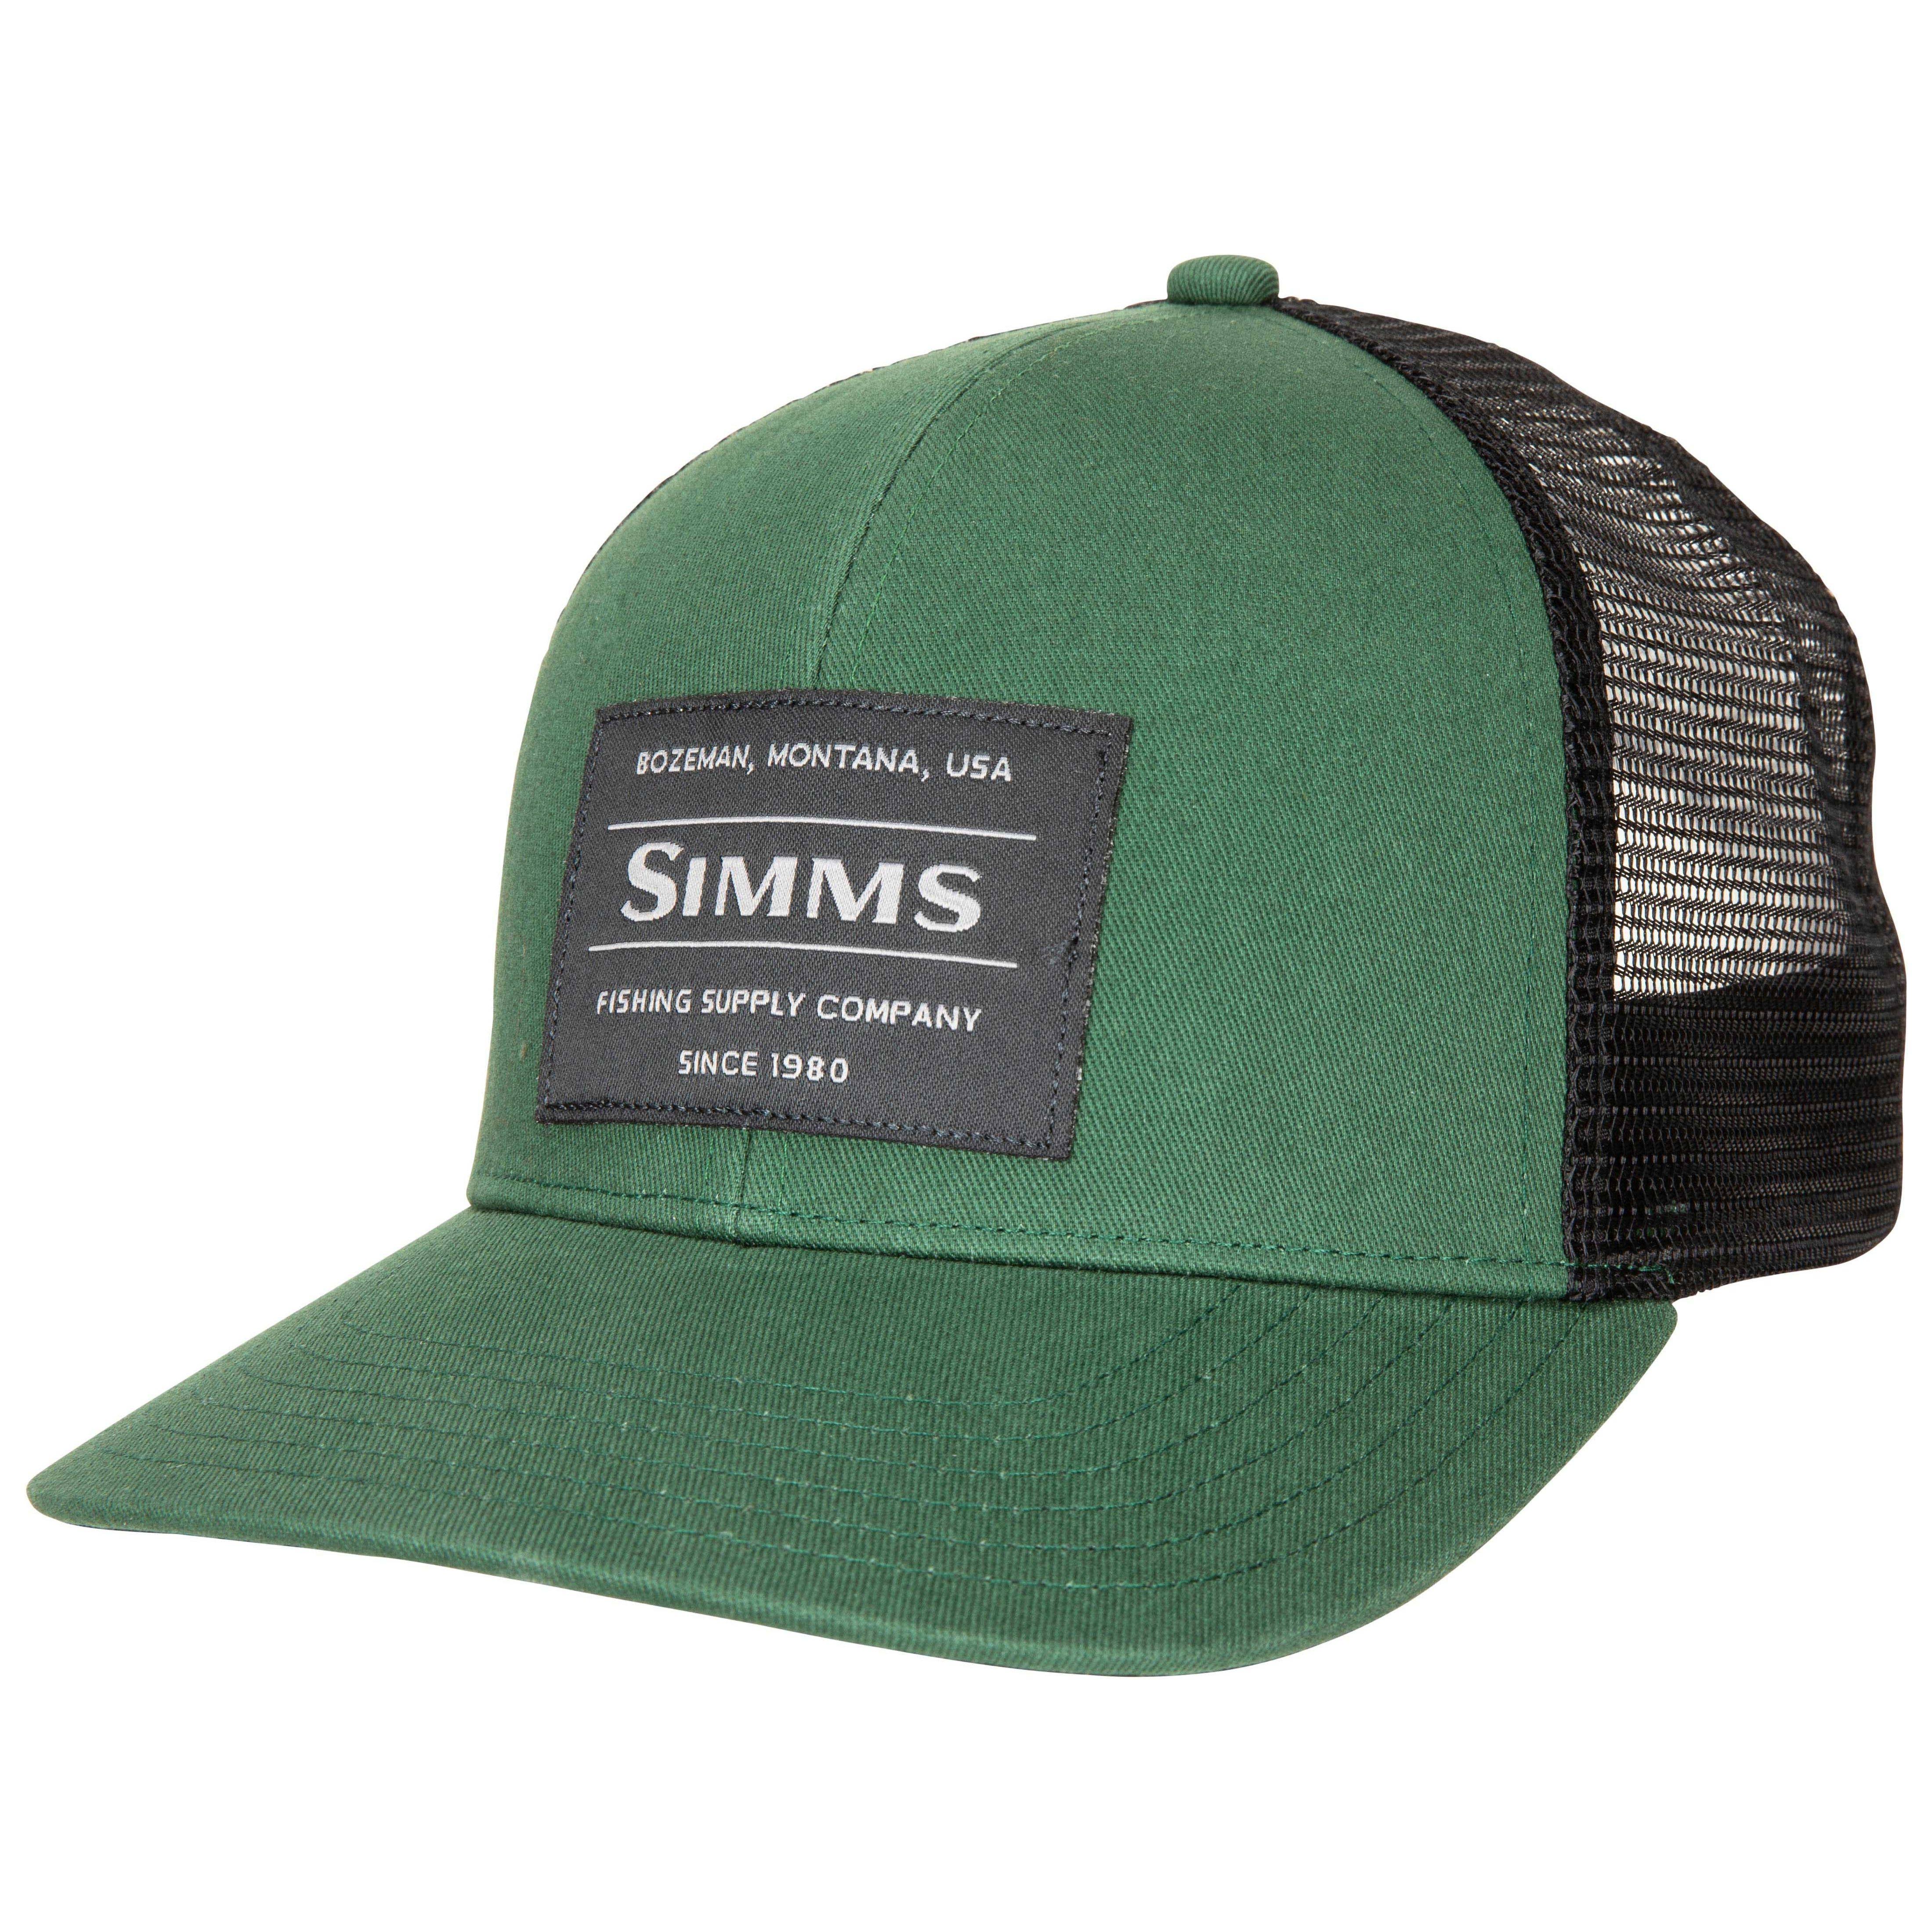 Simms Original Patch Trucker - Moss